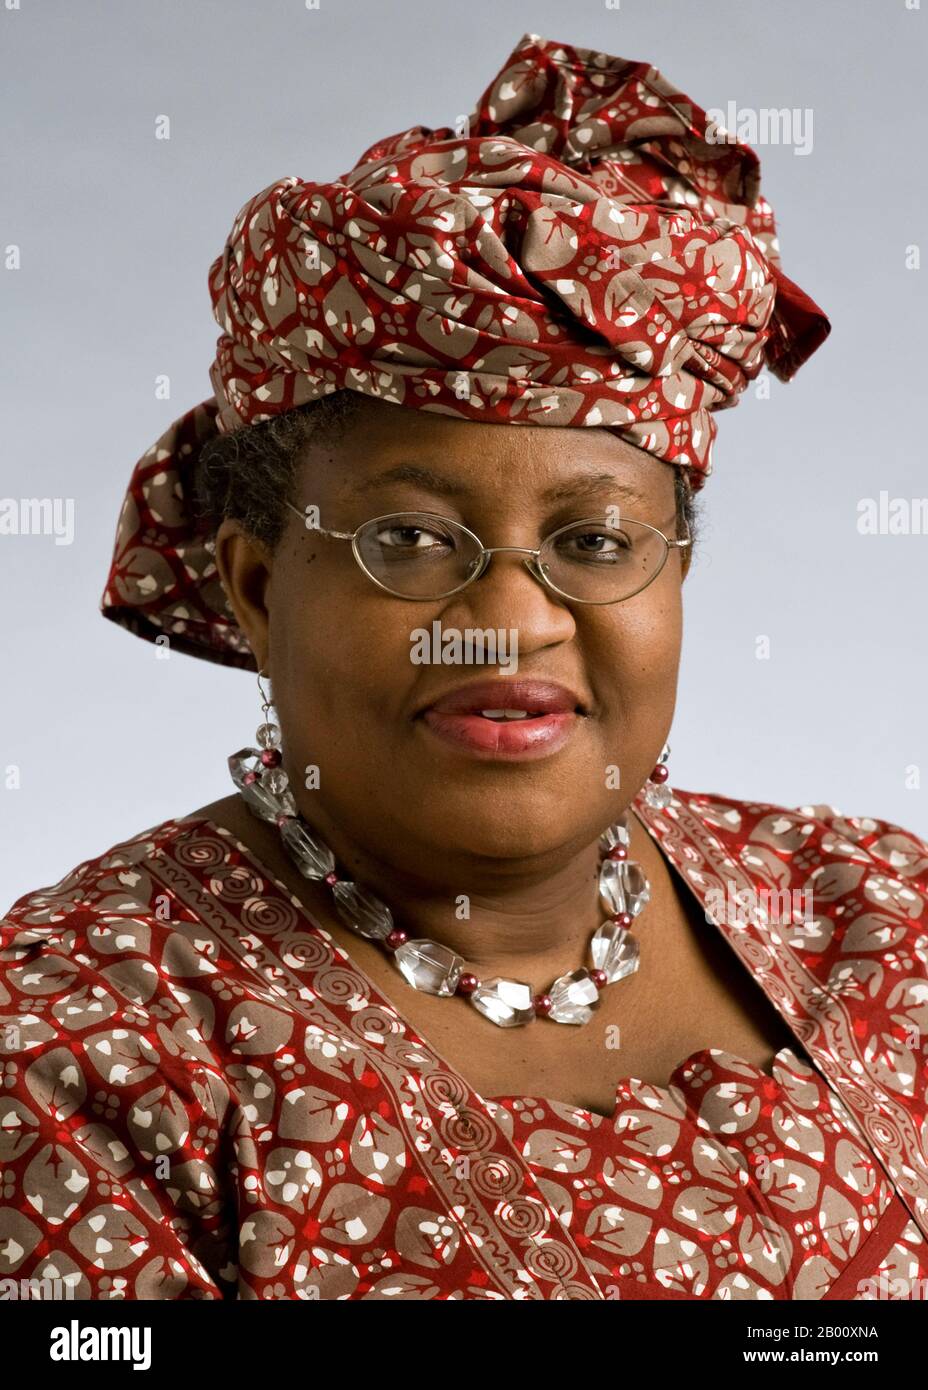 Nigeria: Ngozi Okonjo-Iweala (1954- ), Finanzminister von Nigeria (2003-2006, 2011-2015) und Geschäftsführer der Weltbank (2007-2011), 2008. Ngozi Okonjo-Iweala (geboren am 13. Juni 1954) war Finanzministerin und Außenministerin Nigerias, die als erste Frau eine dieser Positionen innehatte. Sie war von Juli 2003 bis zu ihrer Ernennung zur Außenministerin im Juni 2006 als Finanzministerin und bis zu ihrem Rücktritt im August 2006 als Außenministerin tätig. Am 4. Oktober 2007 wurde sie zur Geschäftsführerin der Weltbank ernannt. Stockfoto